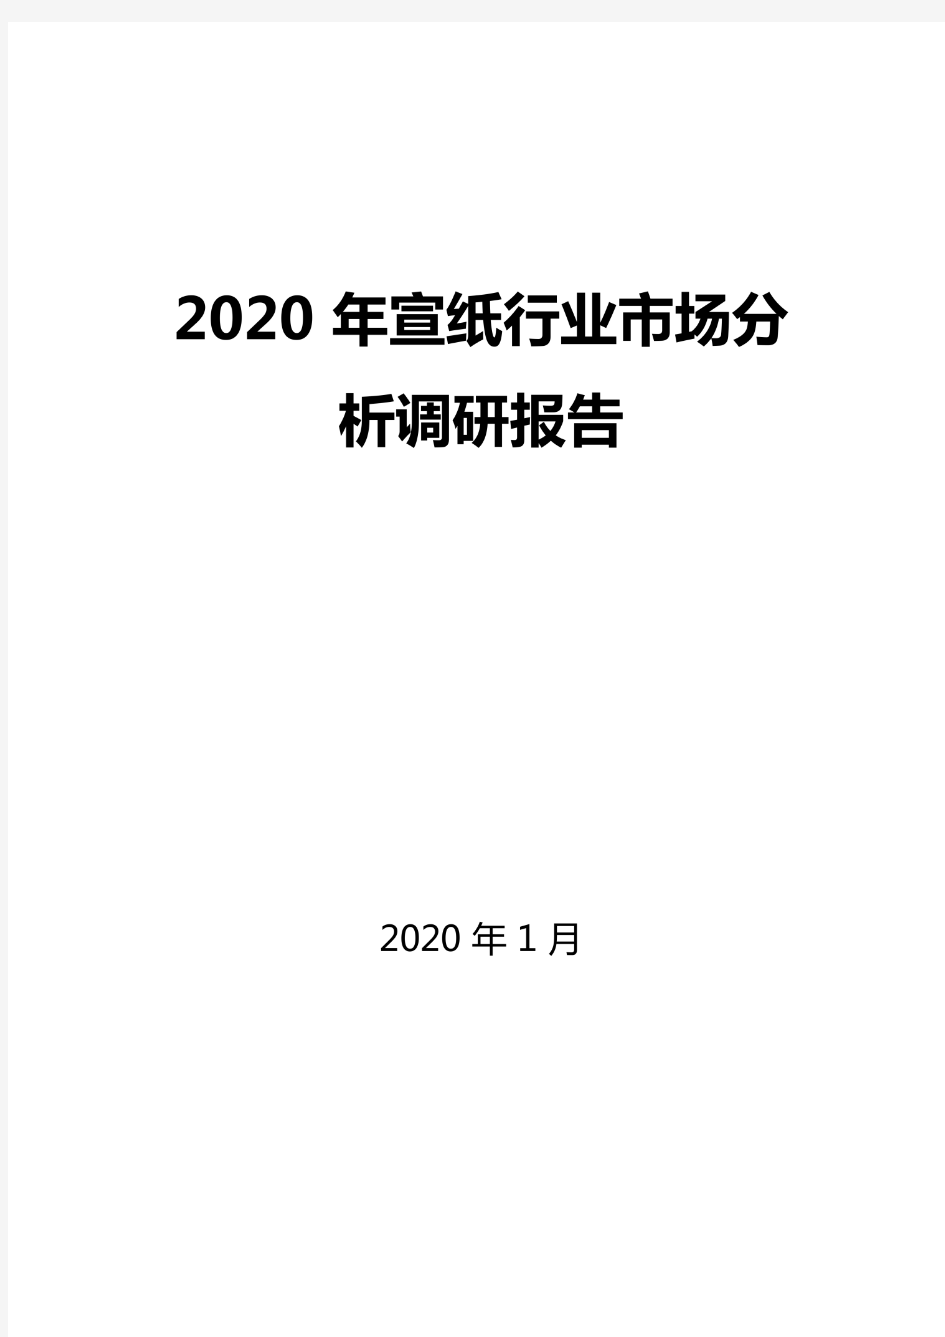 2020年宣纸行业市场分析调研报告